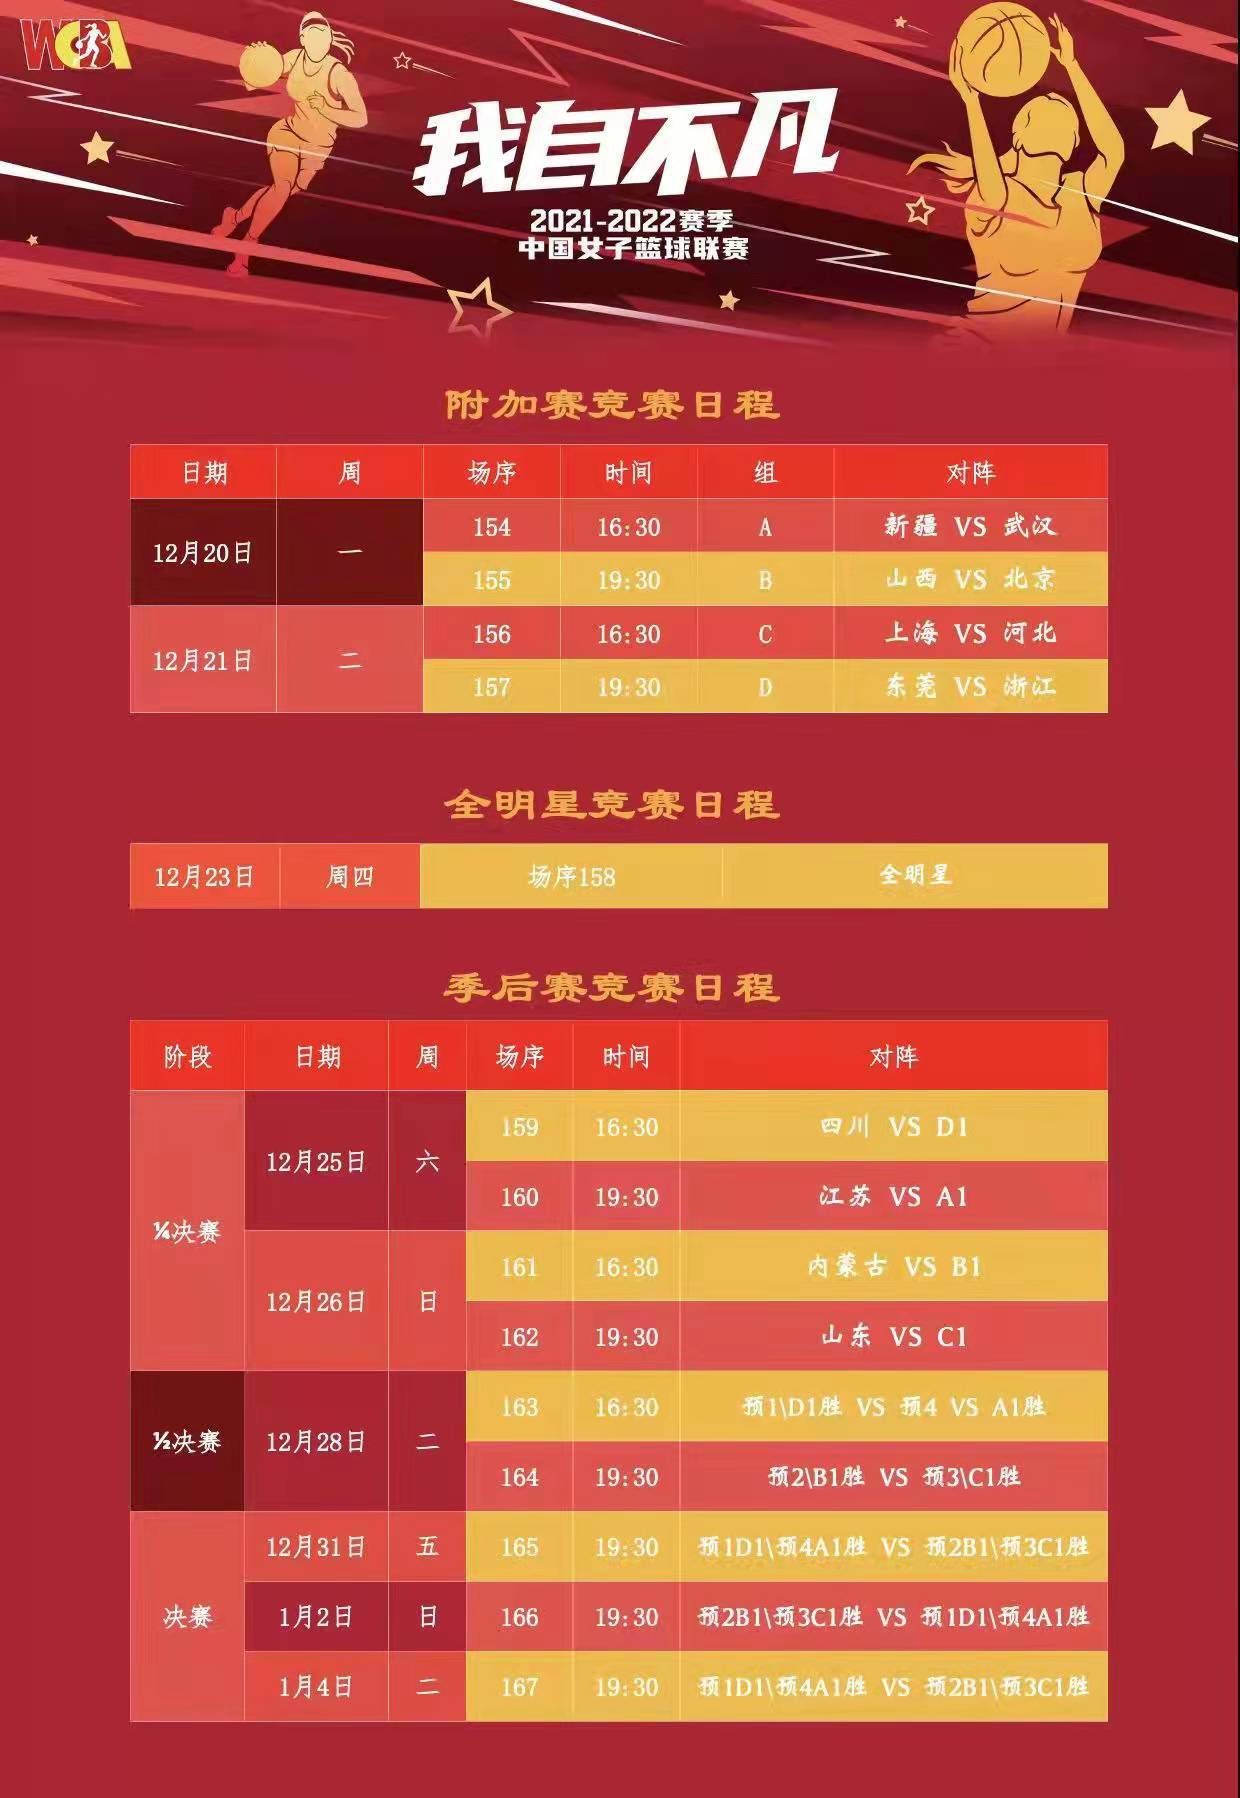 山东高速女篮暂列积分榜第3名 26日将进行季后赛首战